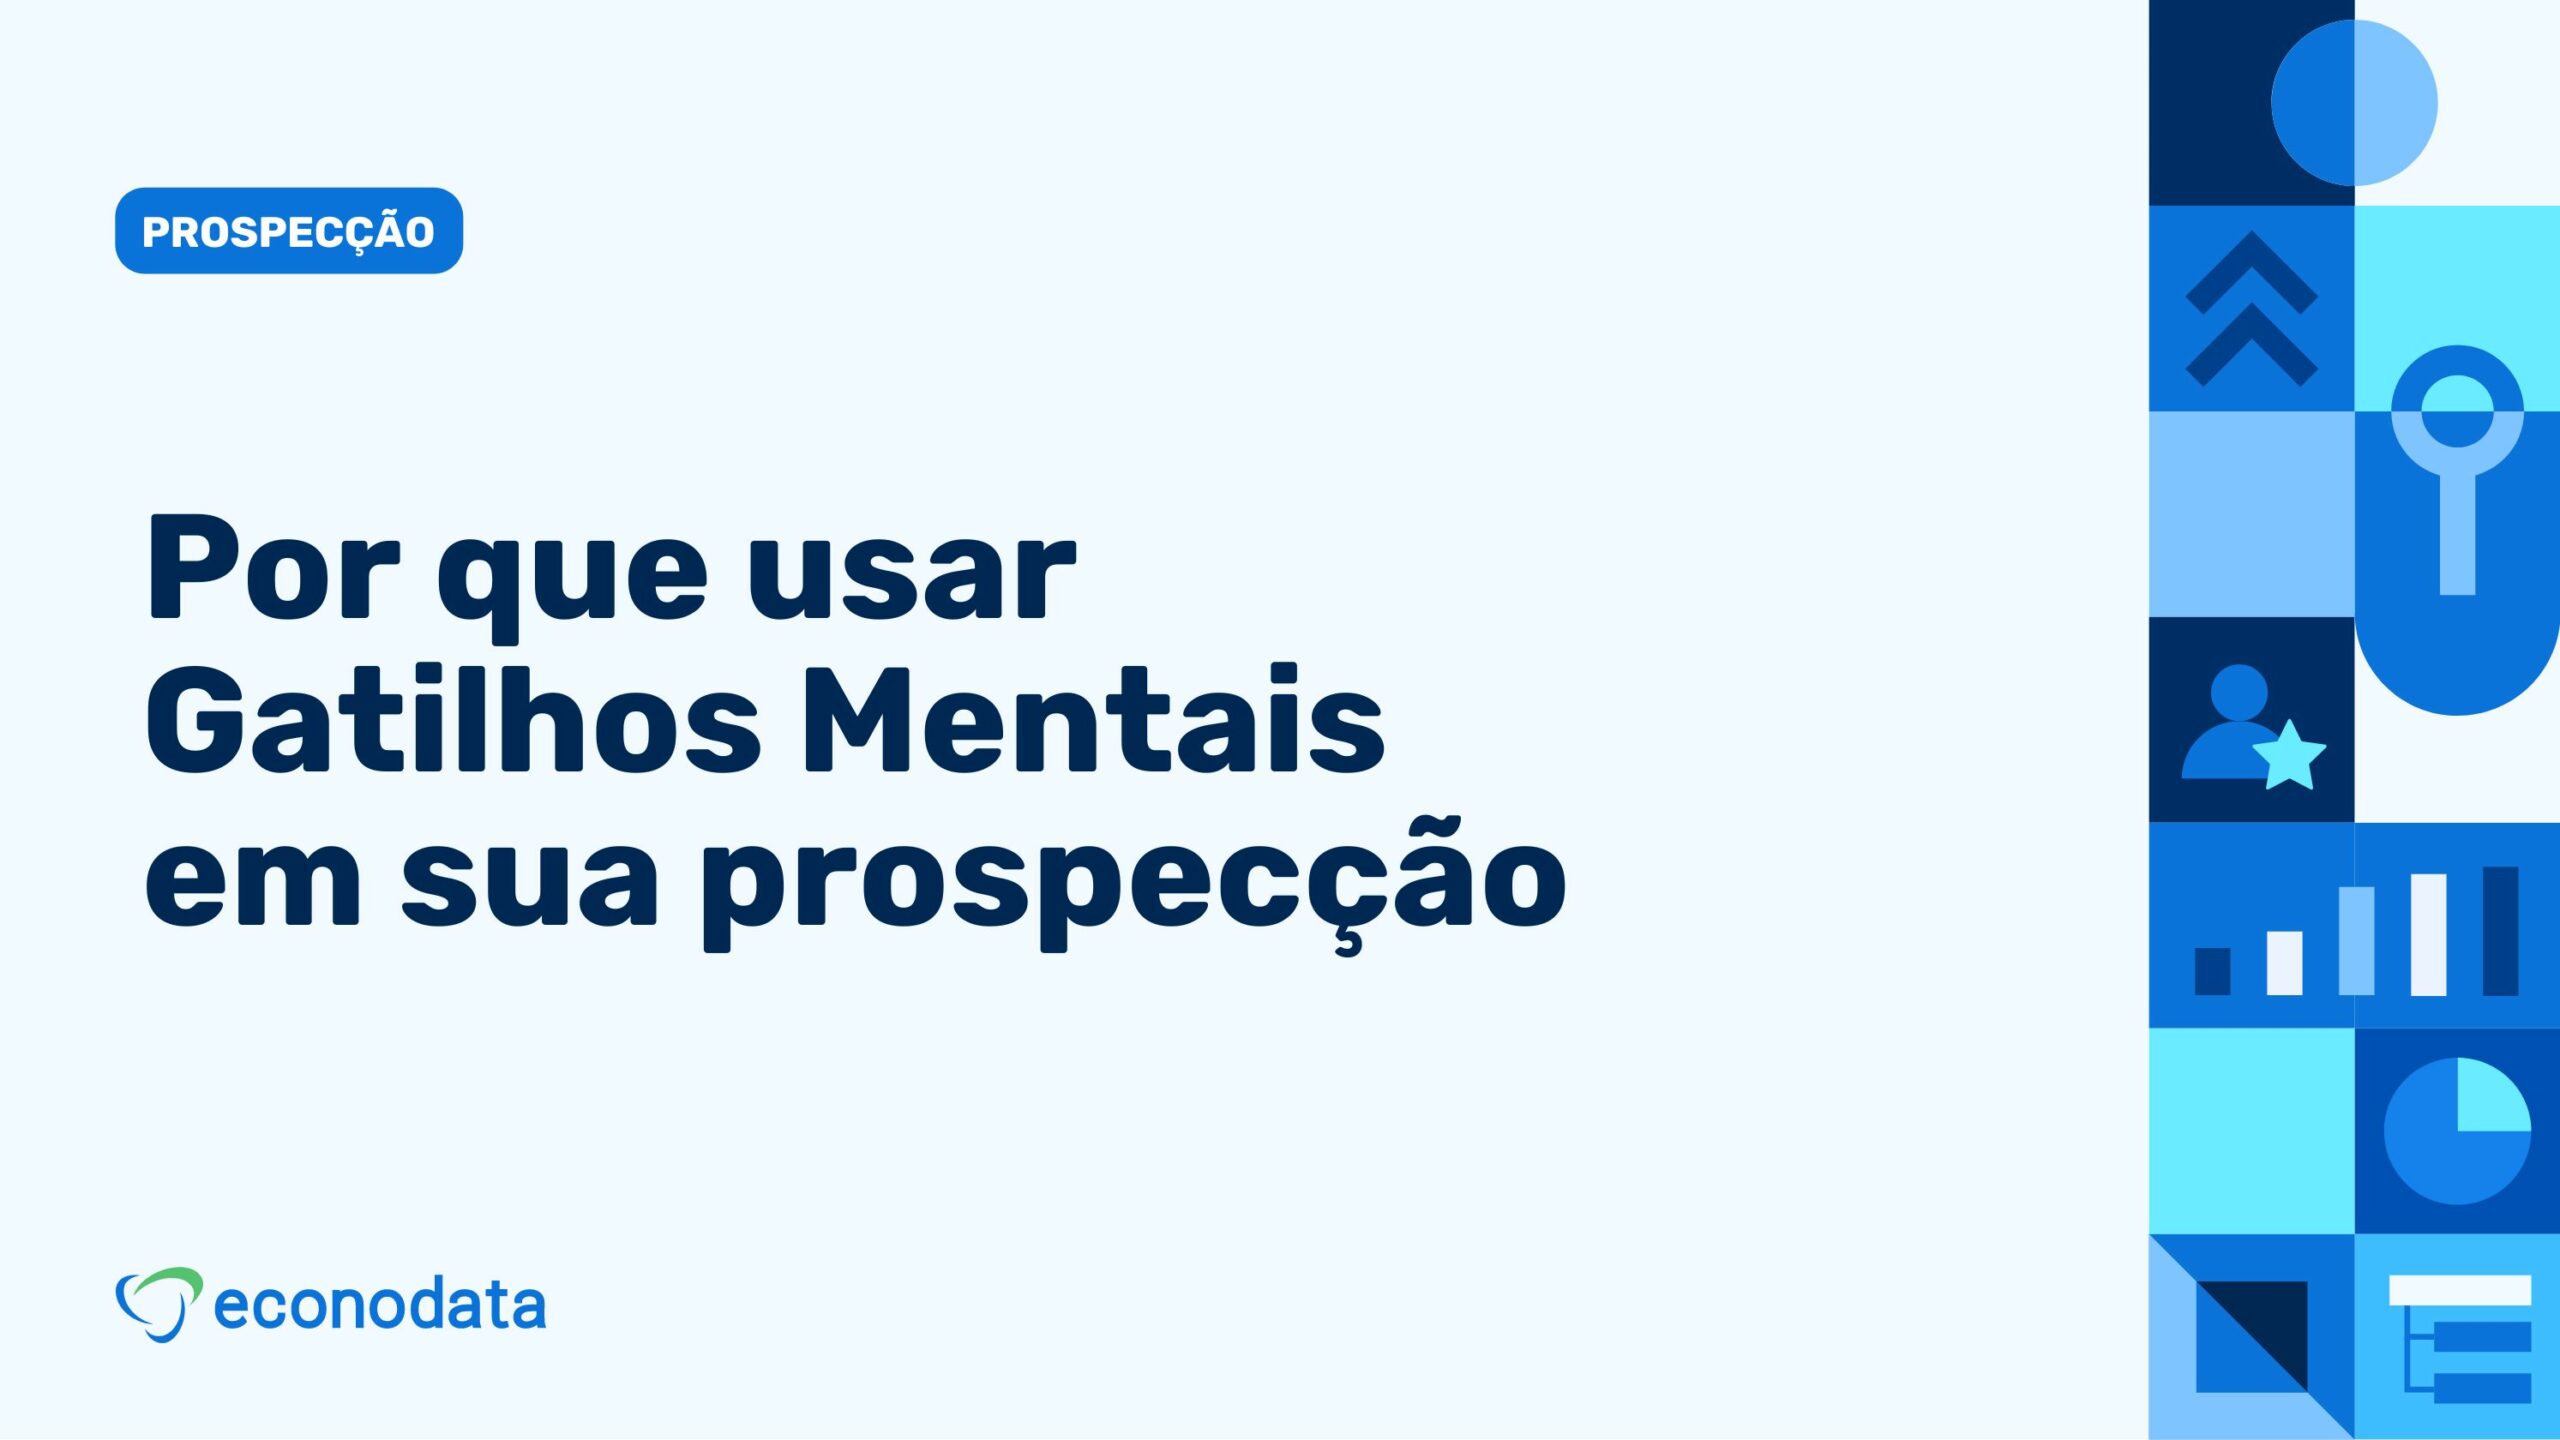 You are currently viewing Gatilhos mentais aplicados na prospecção B2B